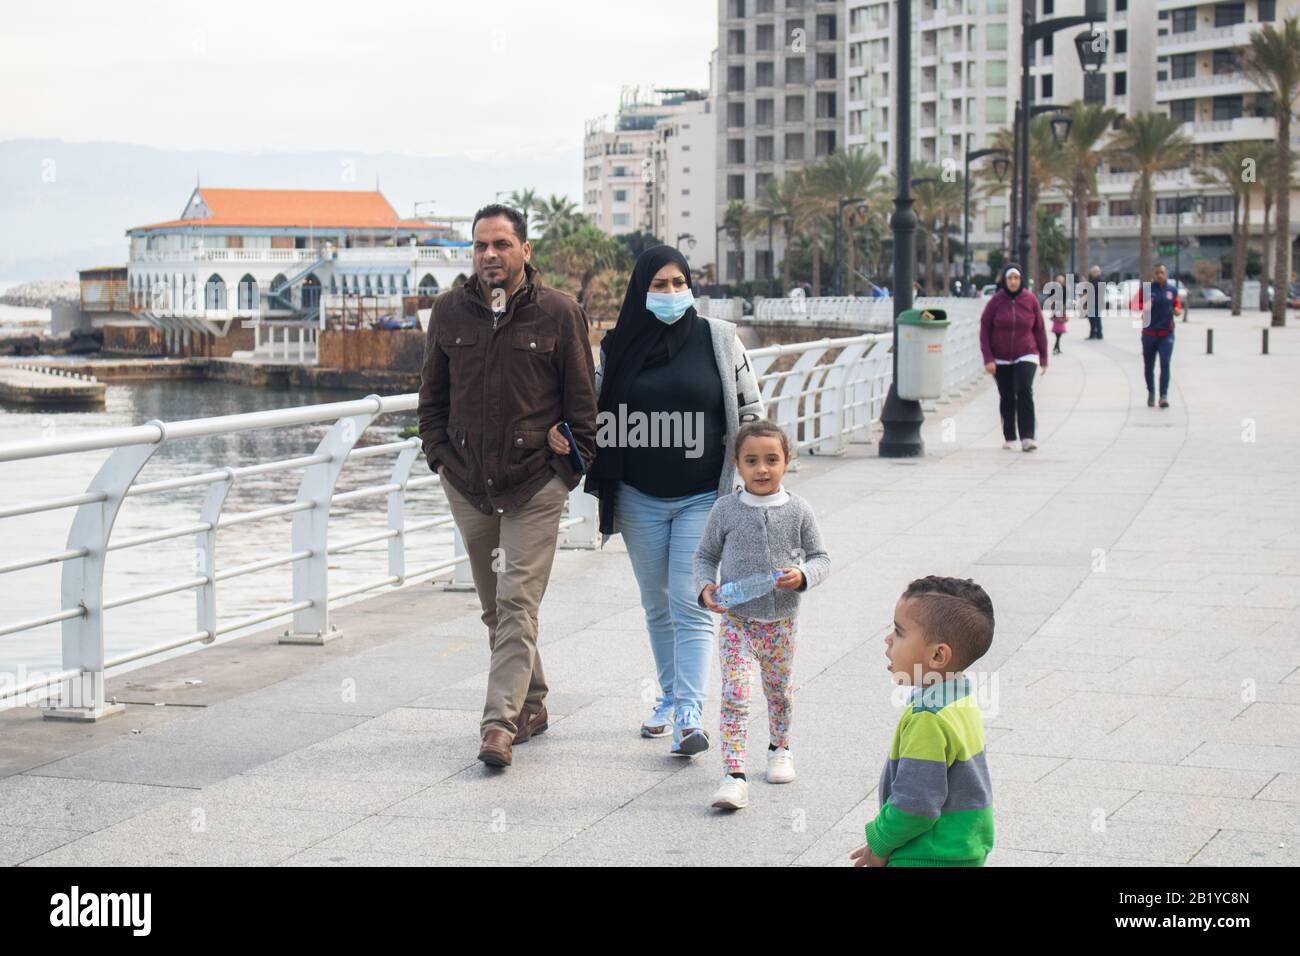 Beyrouth, Liban. 28 février 2020: Une femme marchant avec sa famille le long du front de mer de Beyrouth portant un masque protecteur contre le coronavirus covid 19. Le ministère des transports a annoncé que le Liban a interrompu les vols pour les non-résidents en provenance de pays aux flambées de coronavirus, notamment la Chine, l'Iran, l'Italie et la Corée du Sud. Crédit: Amer ghazzal/Alay Live News Banque D'Images